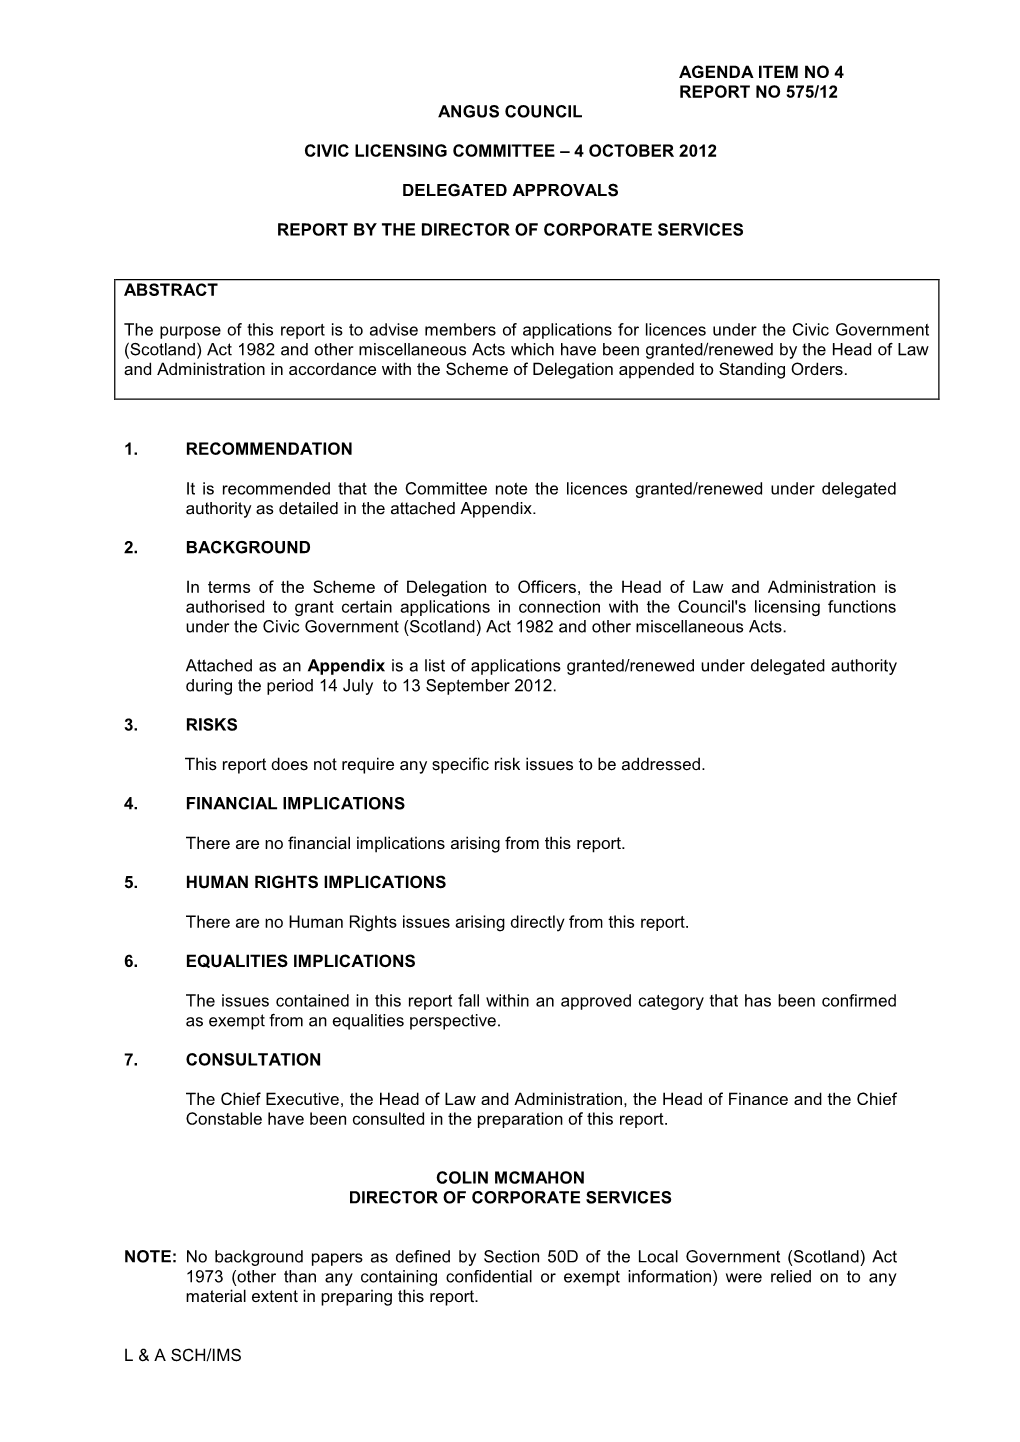 Agenda Item No 4 Report No 575/12 Angus Council